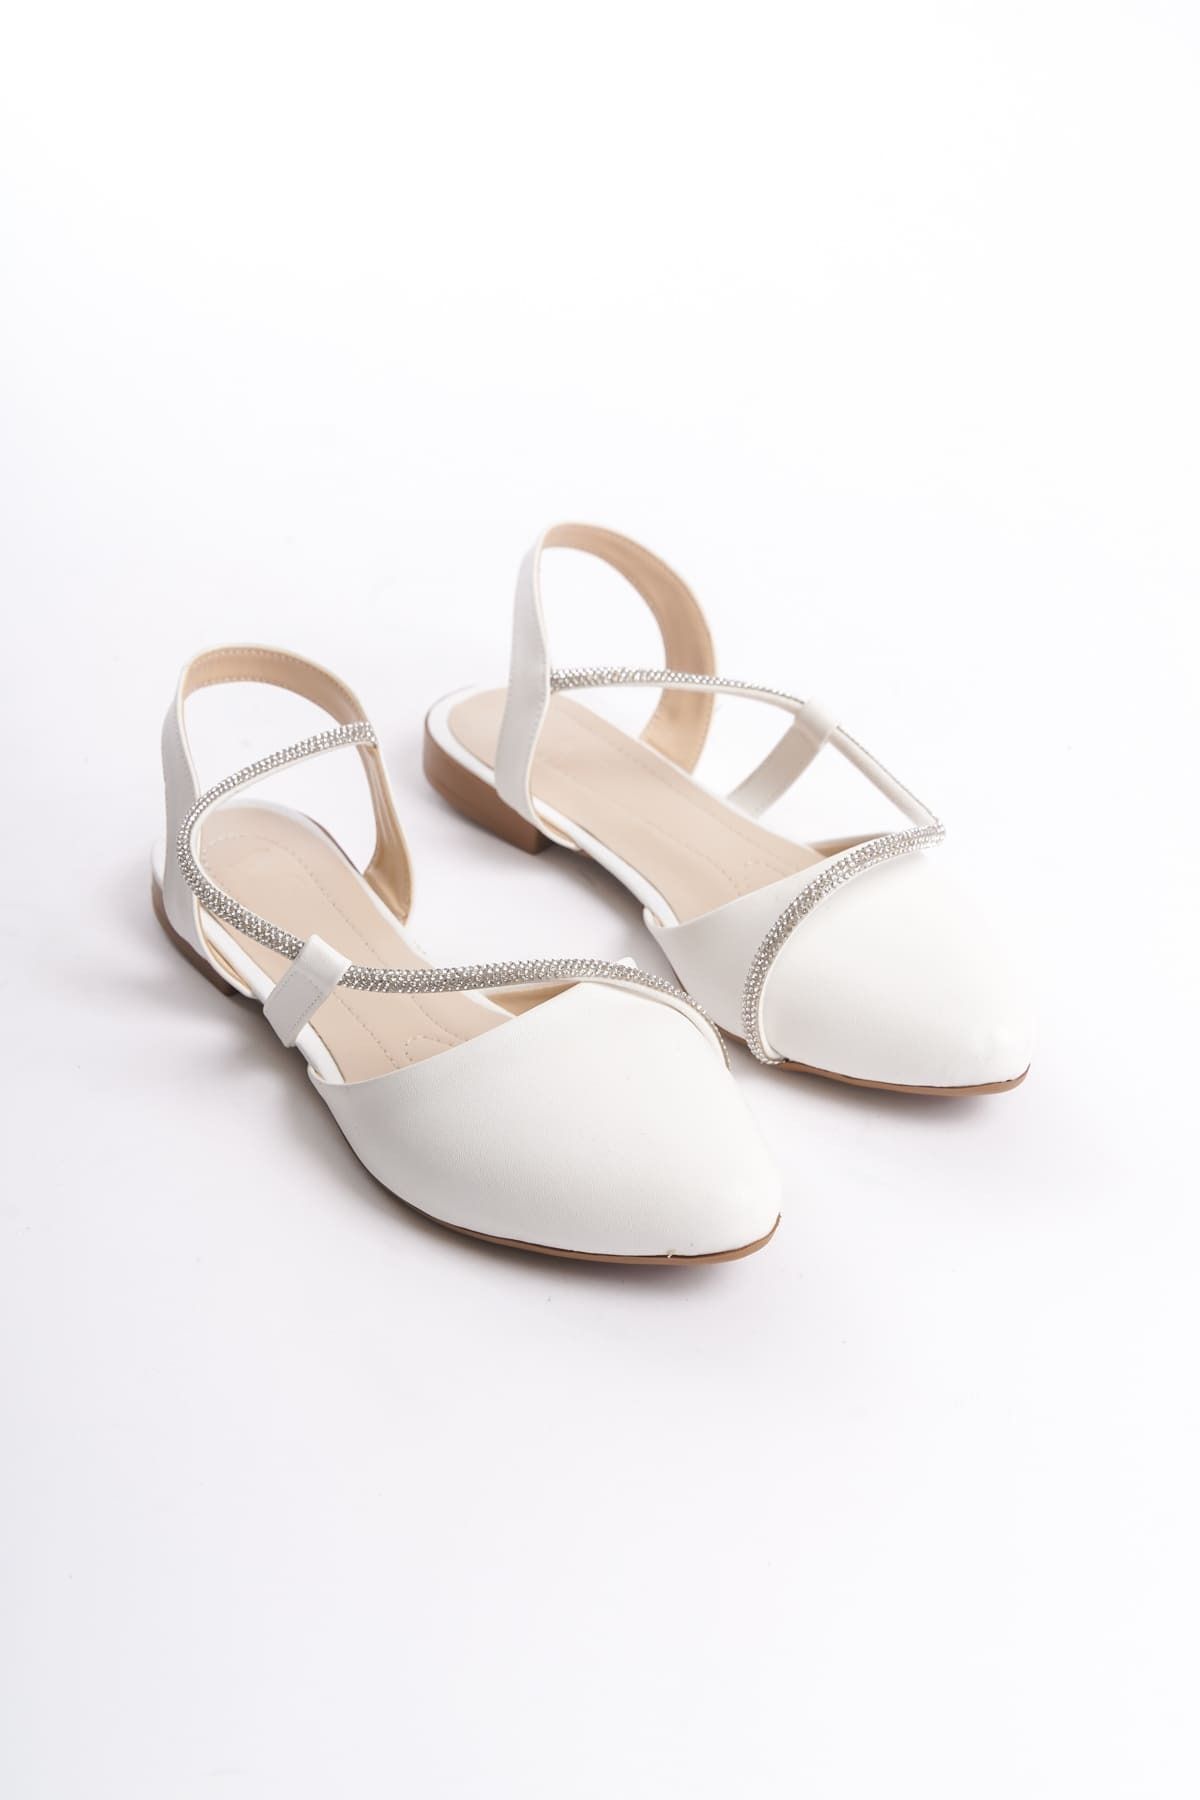 Joy Woman AUBREY Lastikli Ortopedik Rahat Taban Taş Detaylı Kadın Babet Ayakkabı KT Beyaz